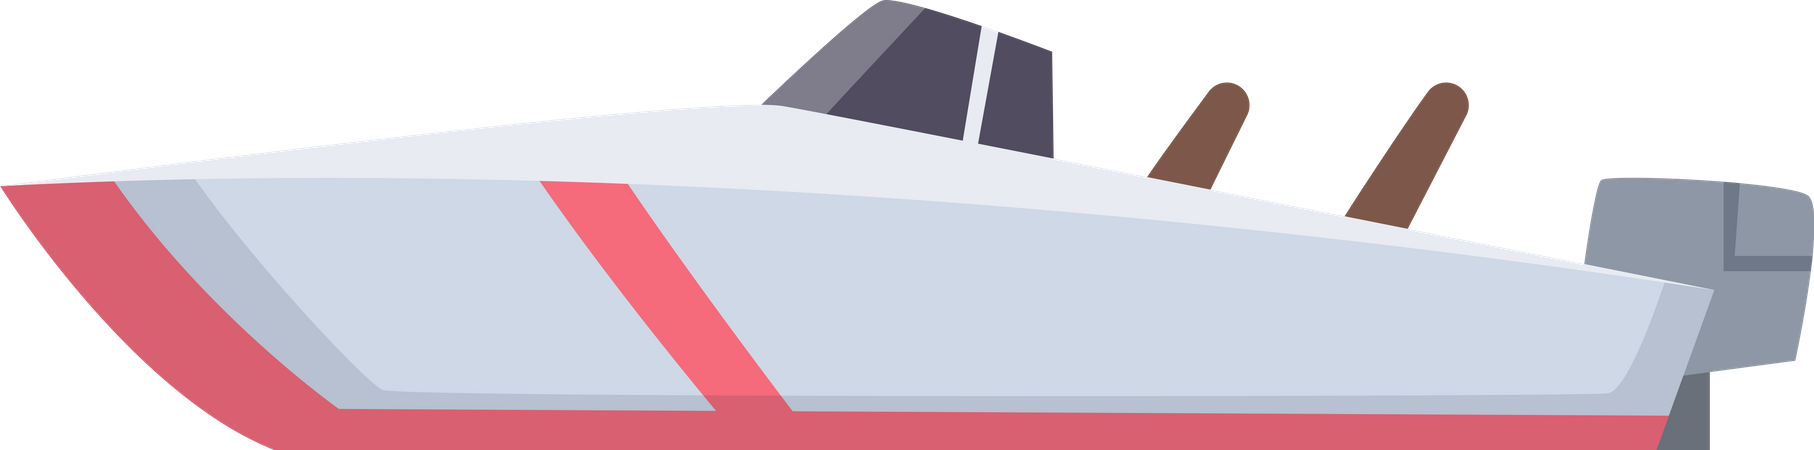 Barco rápido  Ilustración